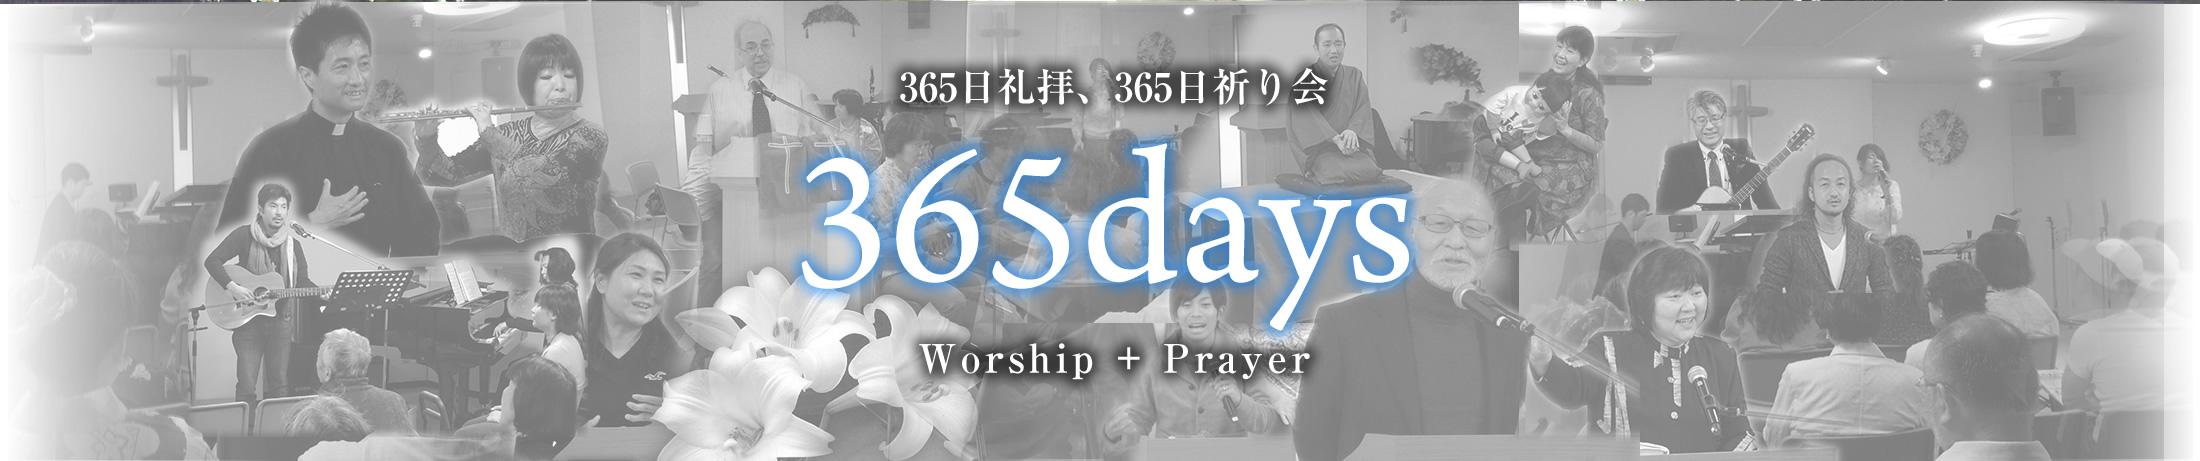 365日礼拝、365日祈り会